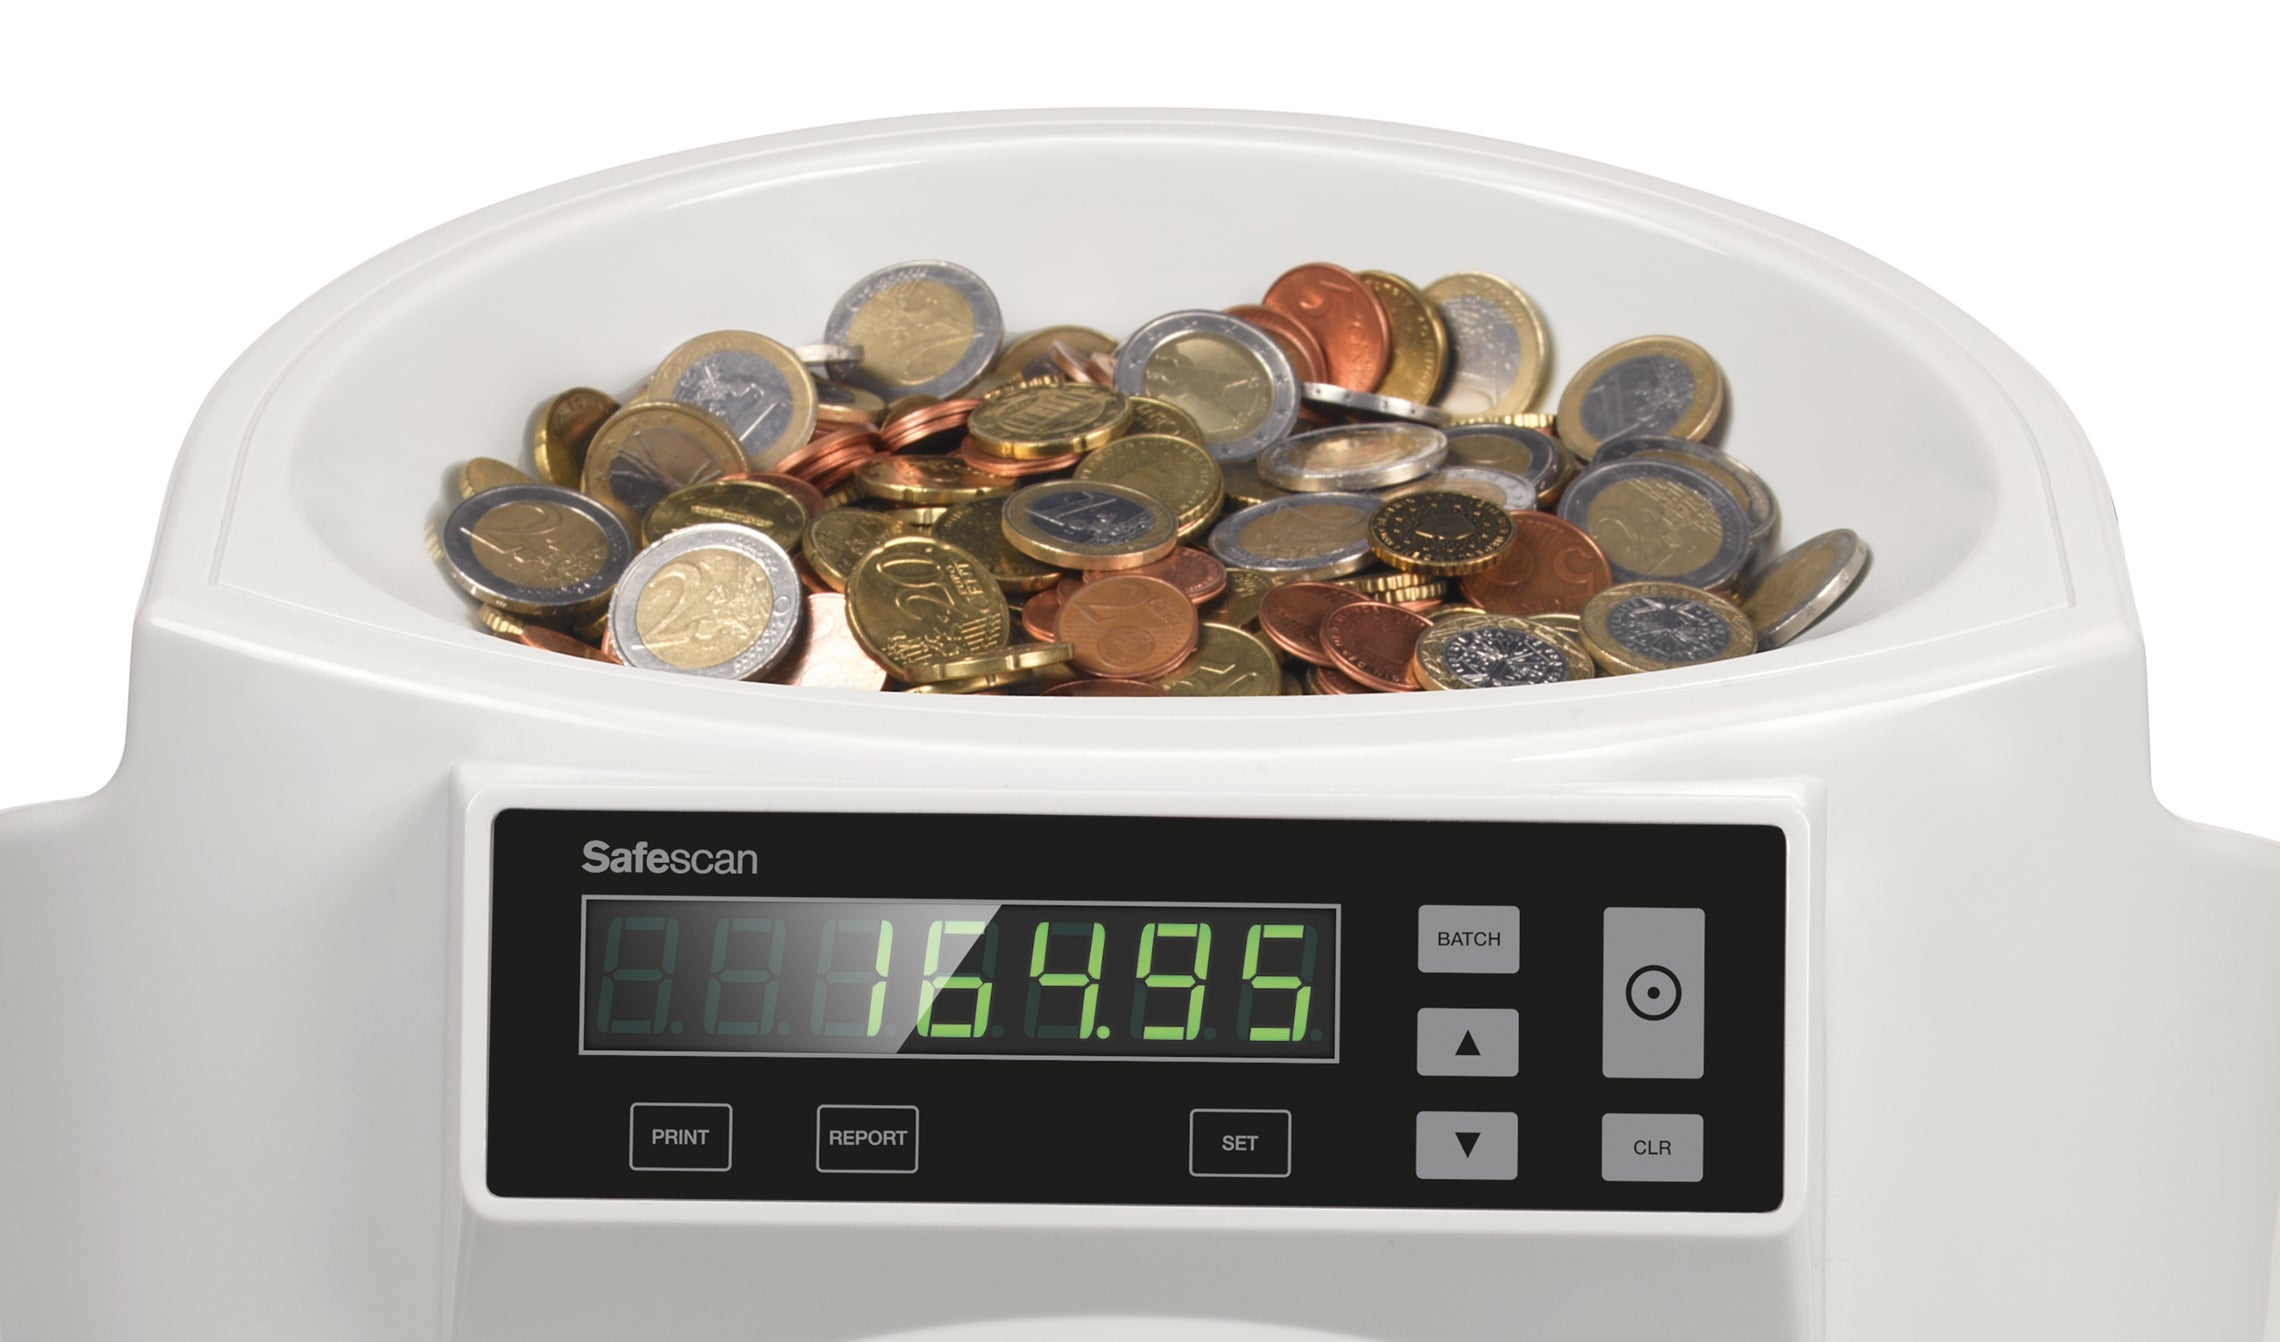 safescan-1250-eur-tolva-para-monedas